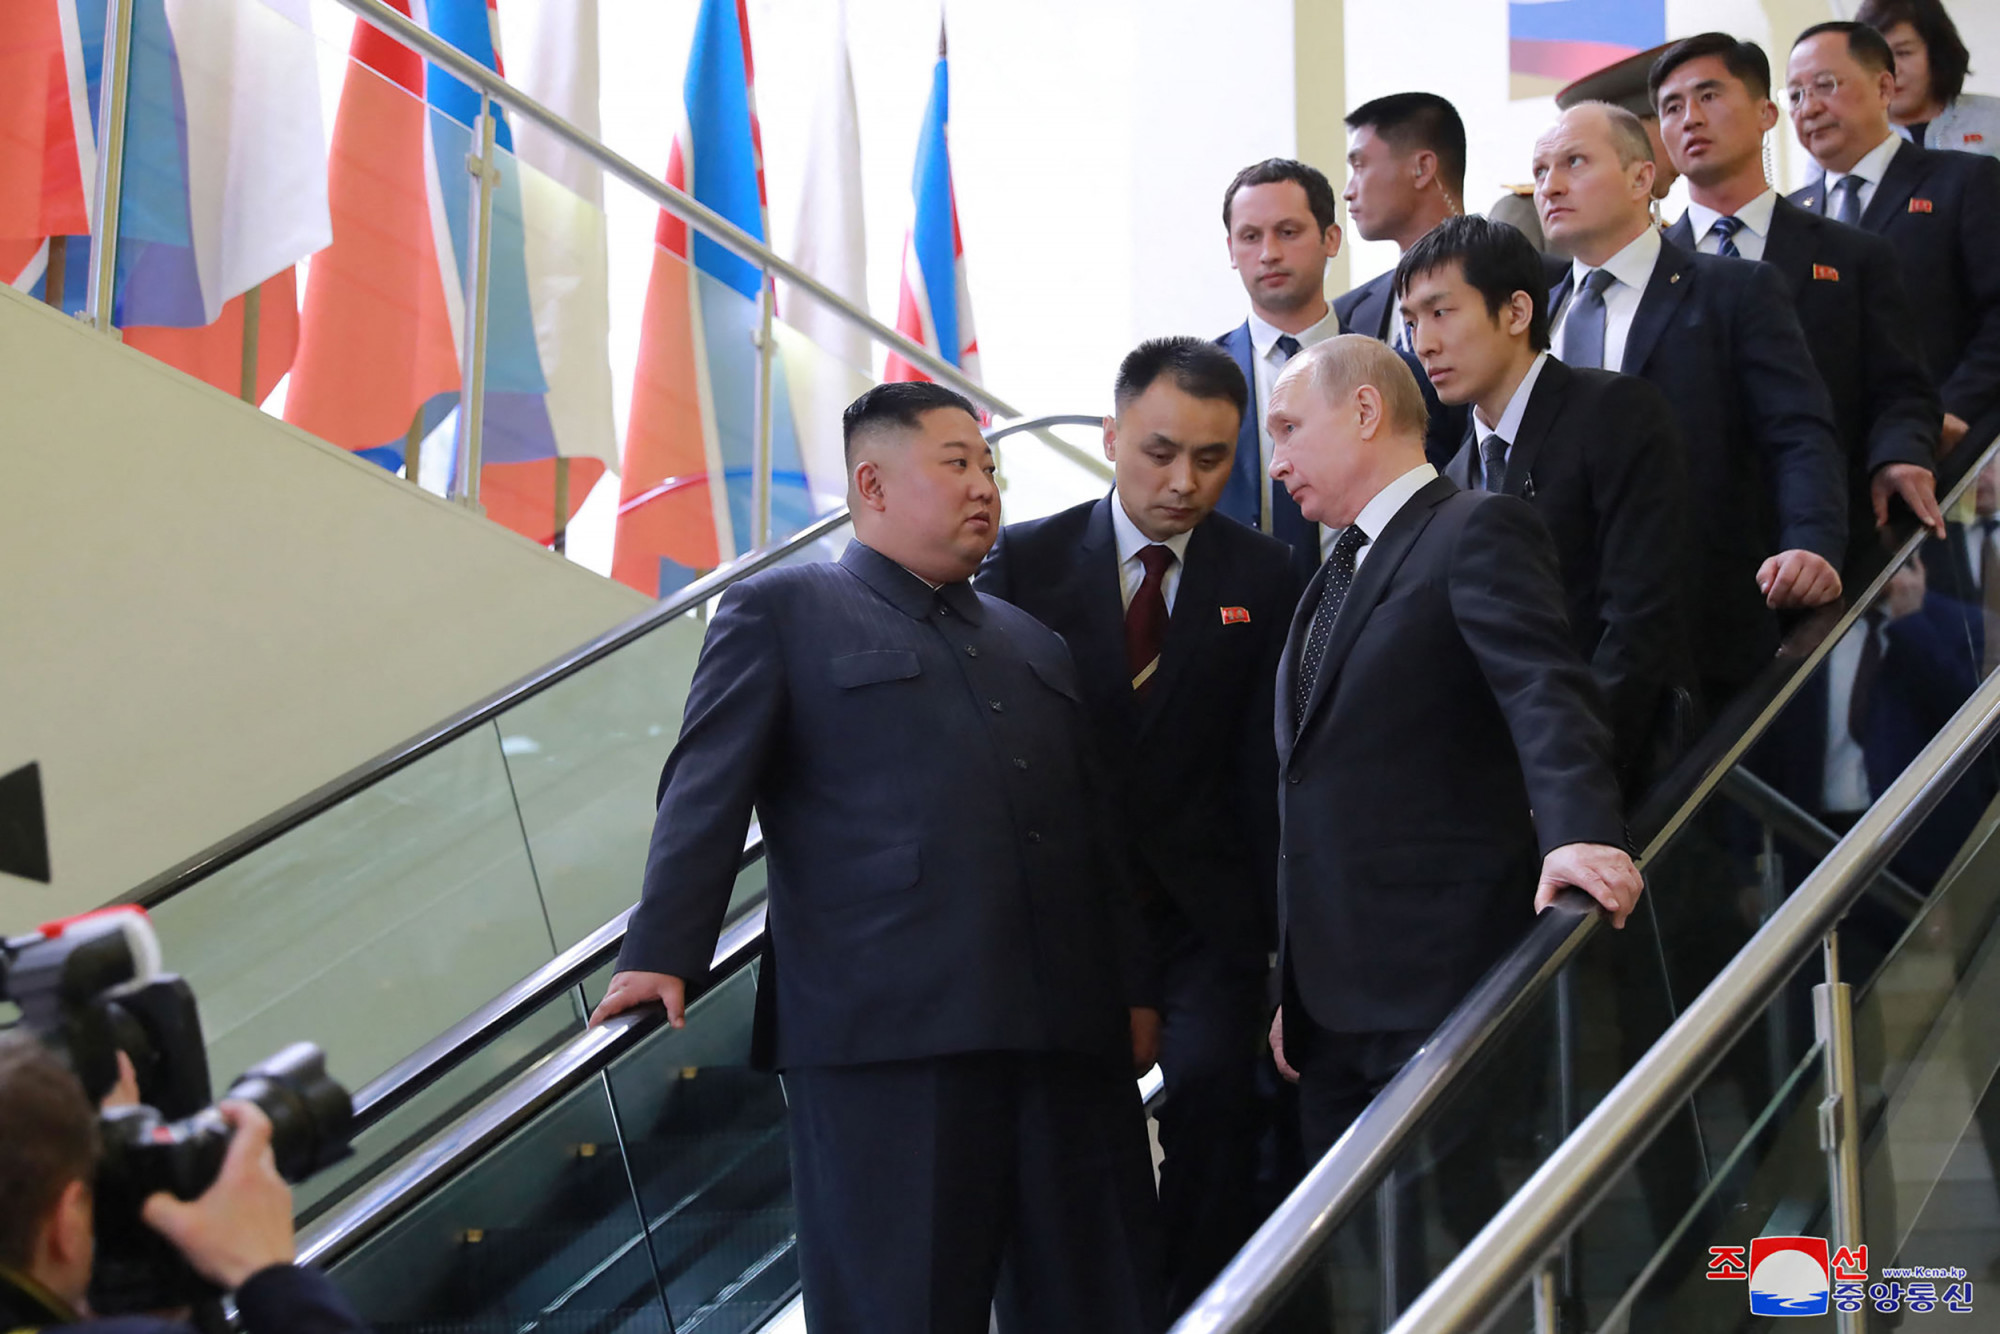 Legyőzhetetlenség, erő és jólét: szerelmeslevél-váltás Putyin és Kim Dzsongun között